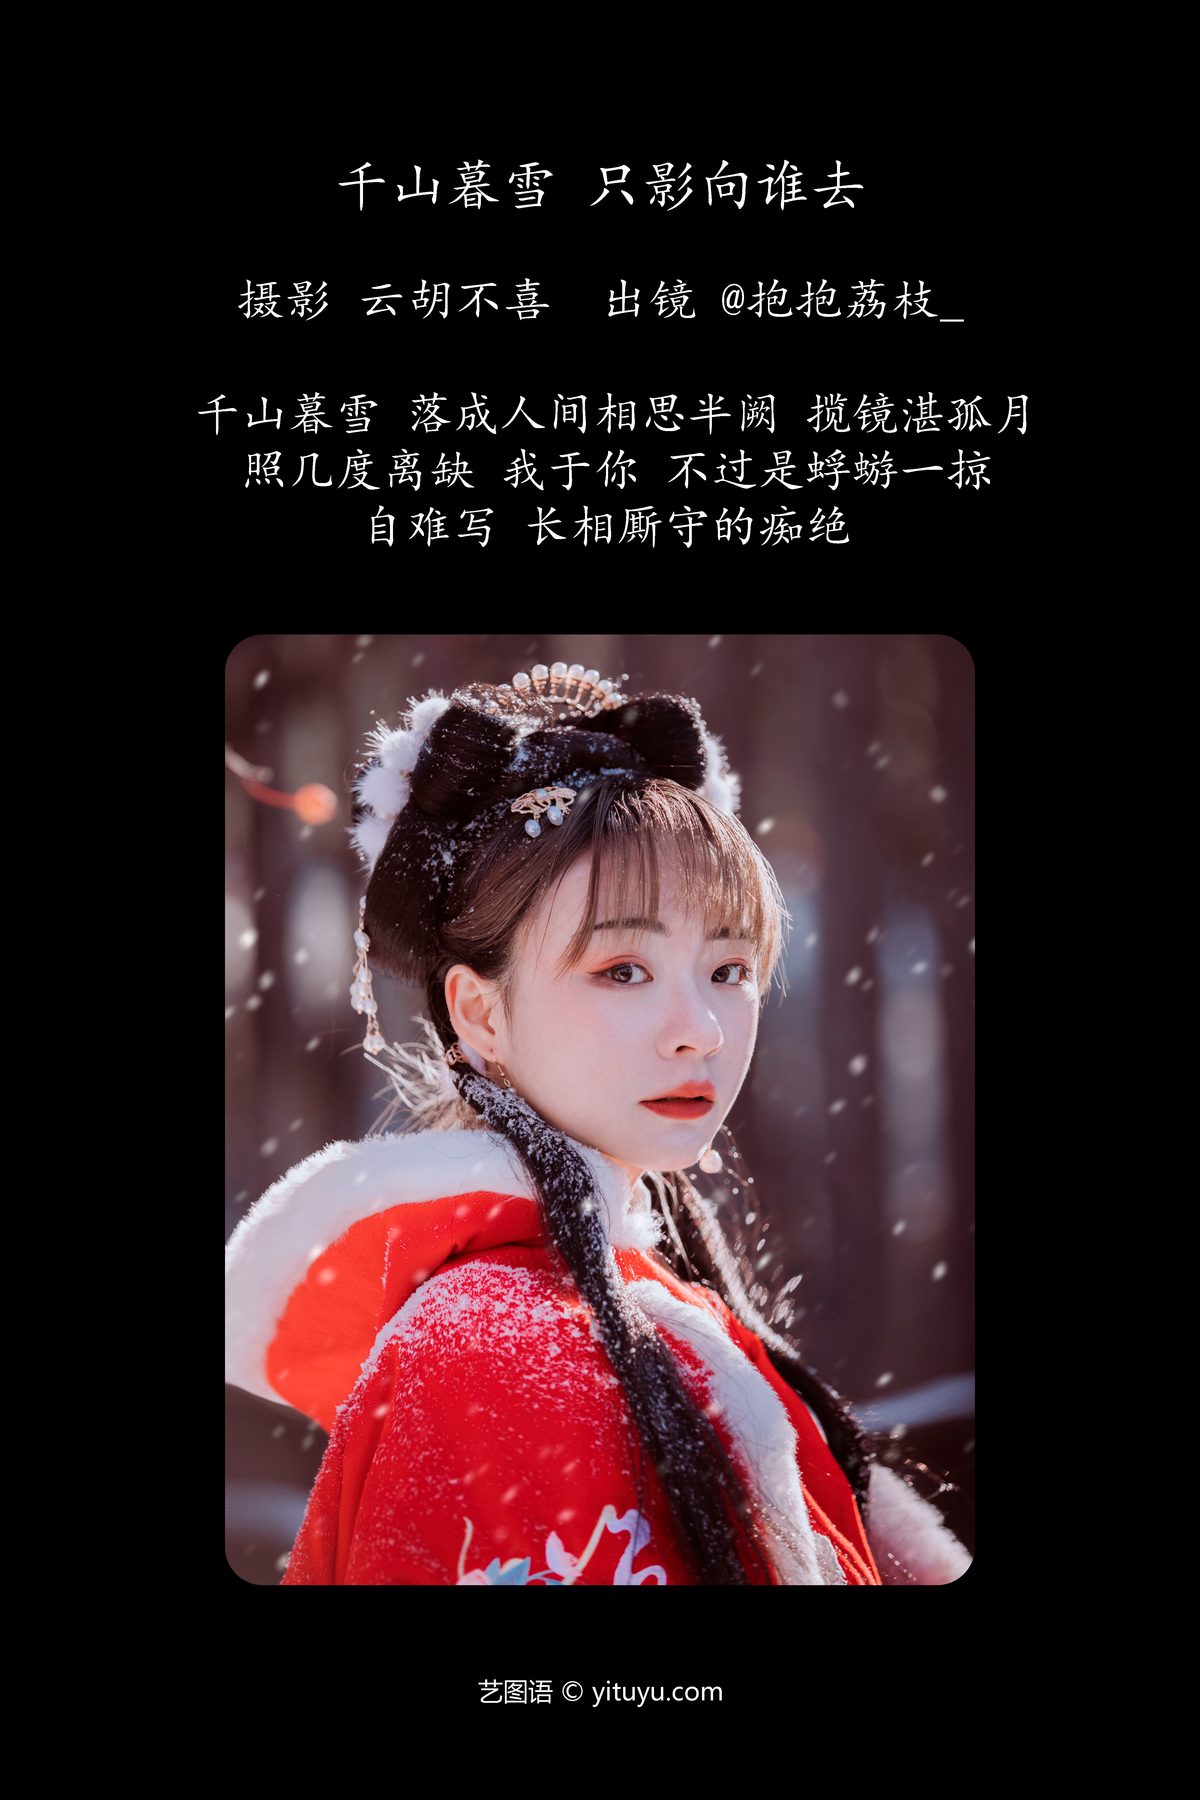 YiTuYu艺图语 Vol 6192 Bao Bao Li Zhi 0002 2501354791.jpg